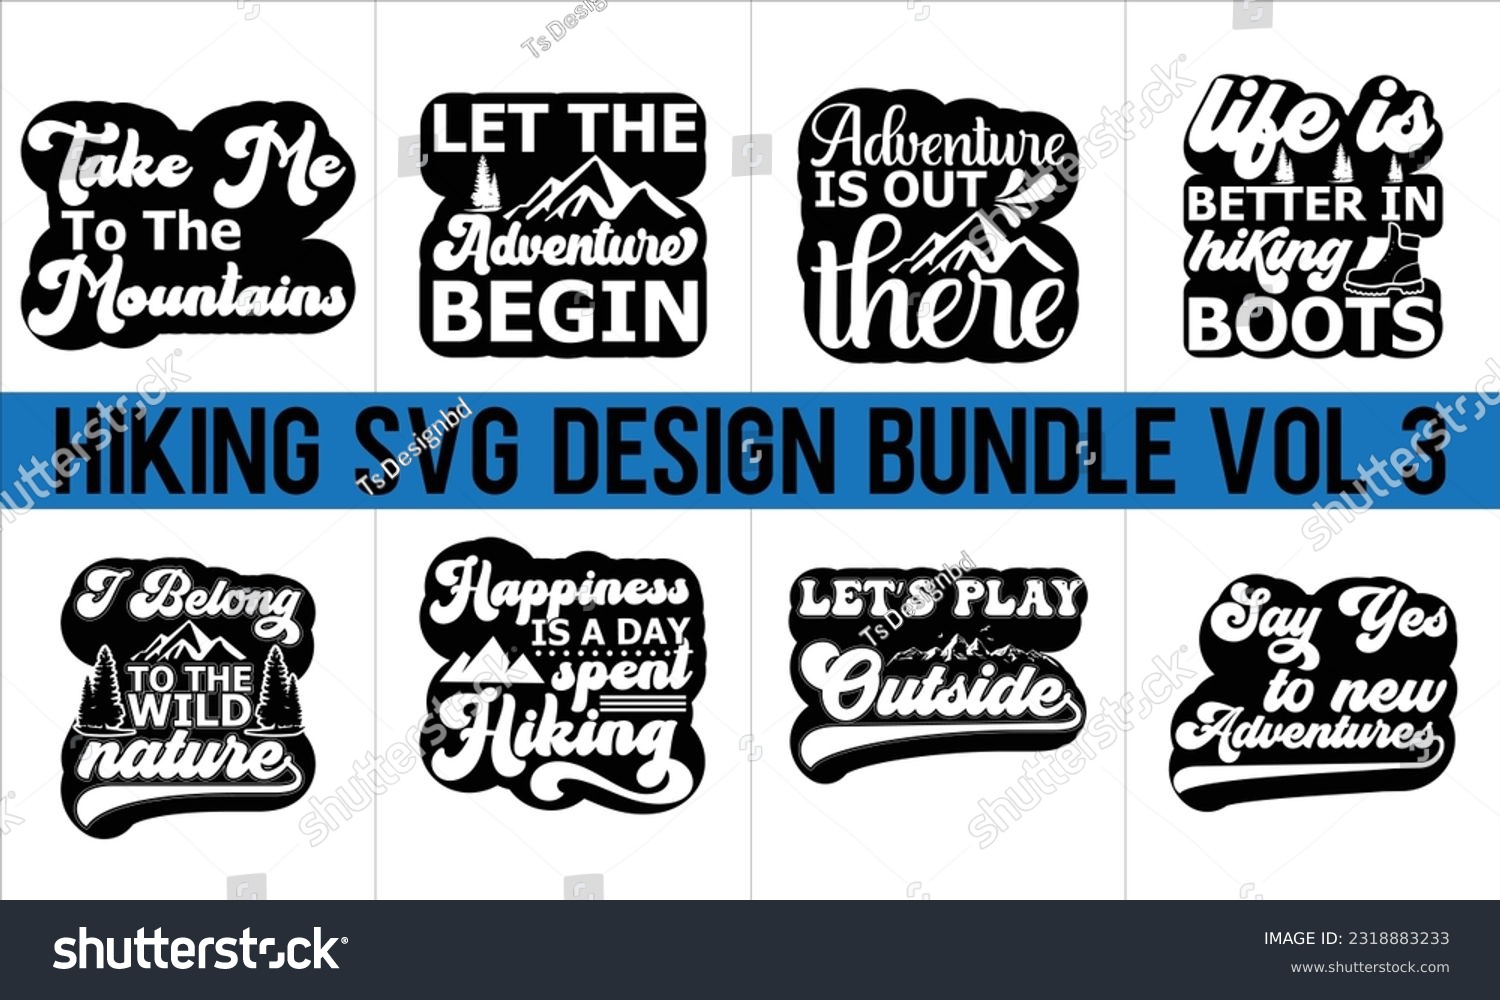 SVG of Hiking Svg Design Bundle Vol 3,Hiking Svg Design, Mountain illustration, outdoor adventure ,Outdoor Adventure Inspiring Motivation Quote,camping shirt, camping, hiking svg